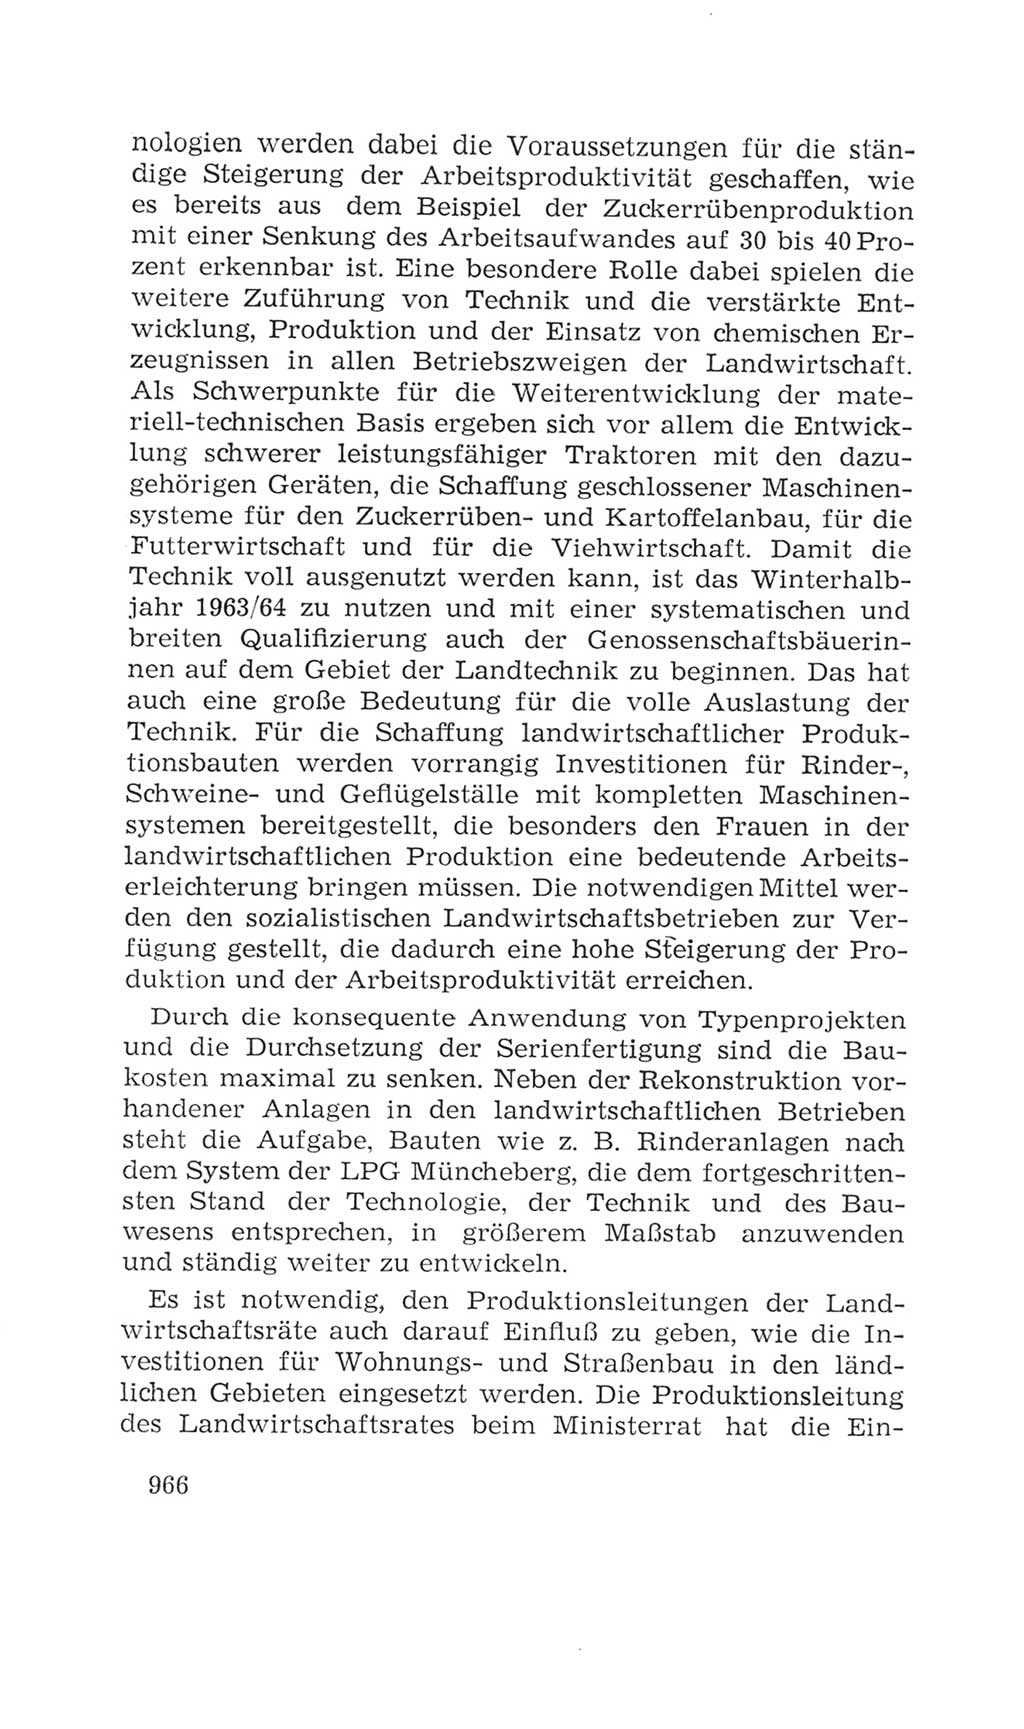 Volkskammer (VK) der Deutschen Demokratischen Republik (DDR), 4. Wahlperiode 1963-1967, Seite 966 (VK. DDR 4. WP. 1963-1967, S. 966)